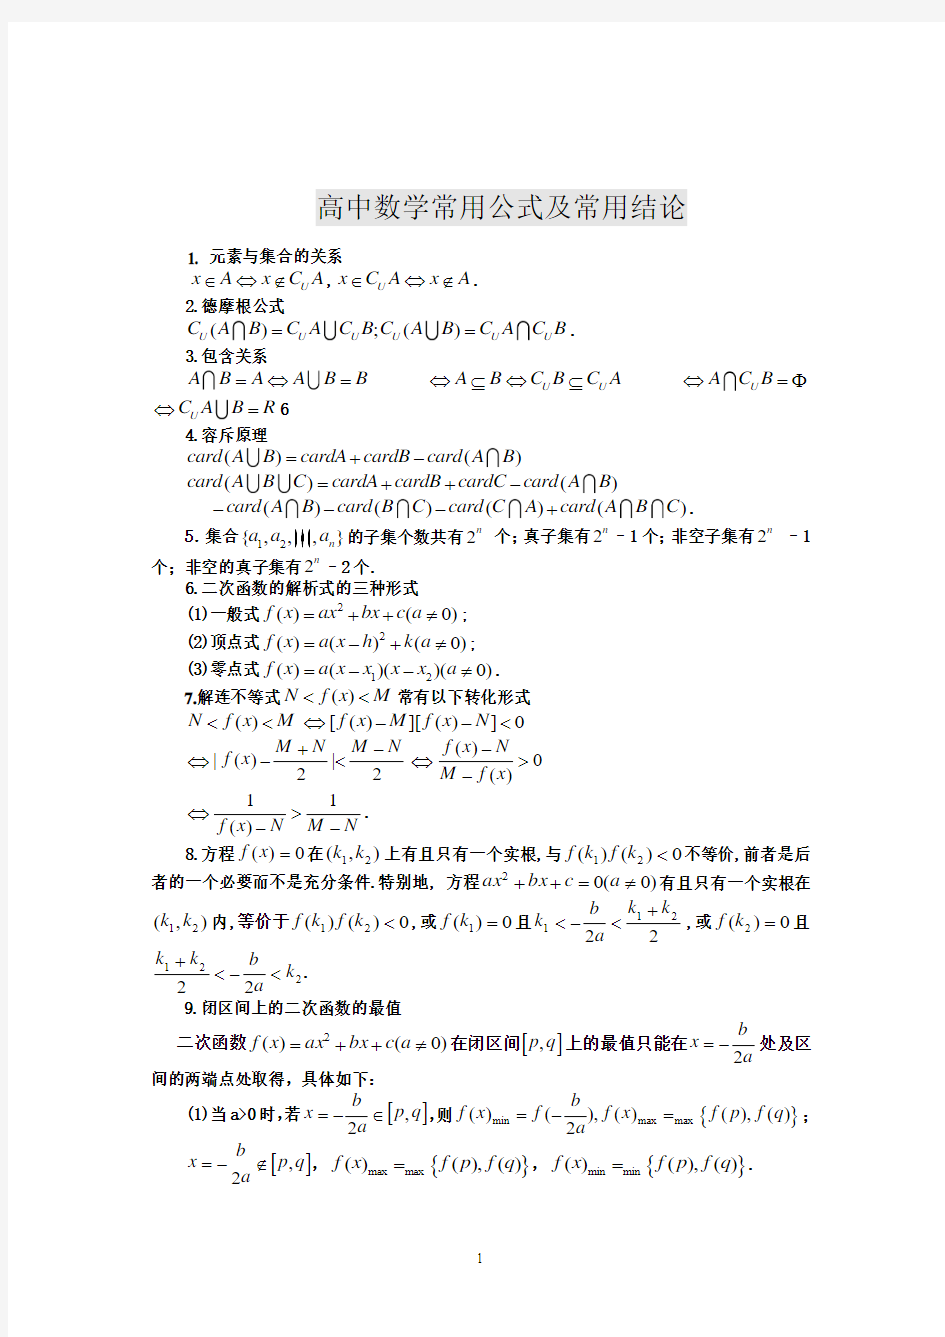 高考数学备考笔记(常用公式及常用结论)